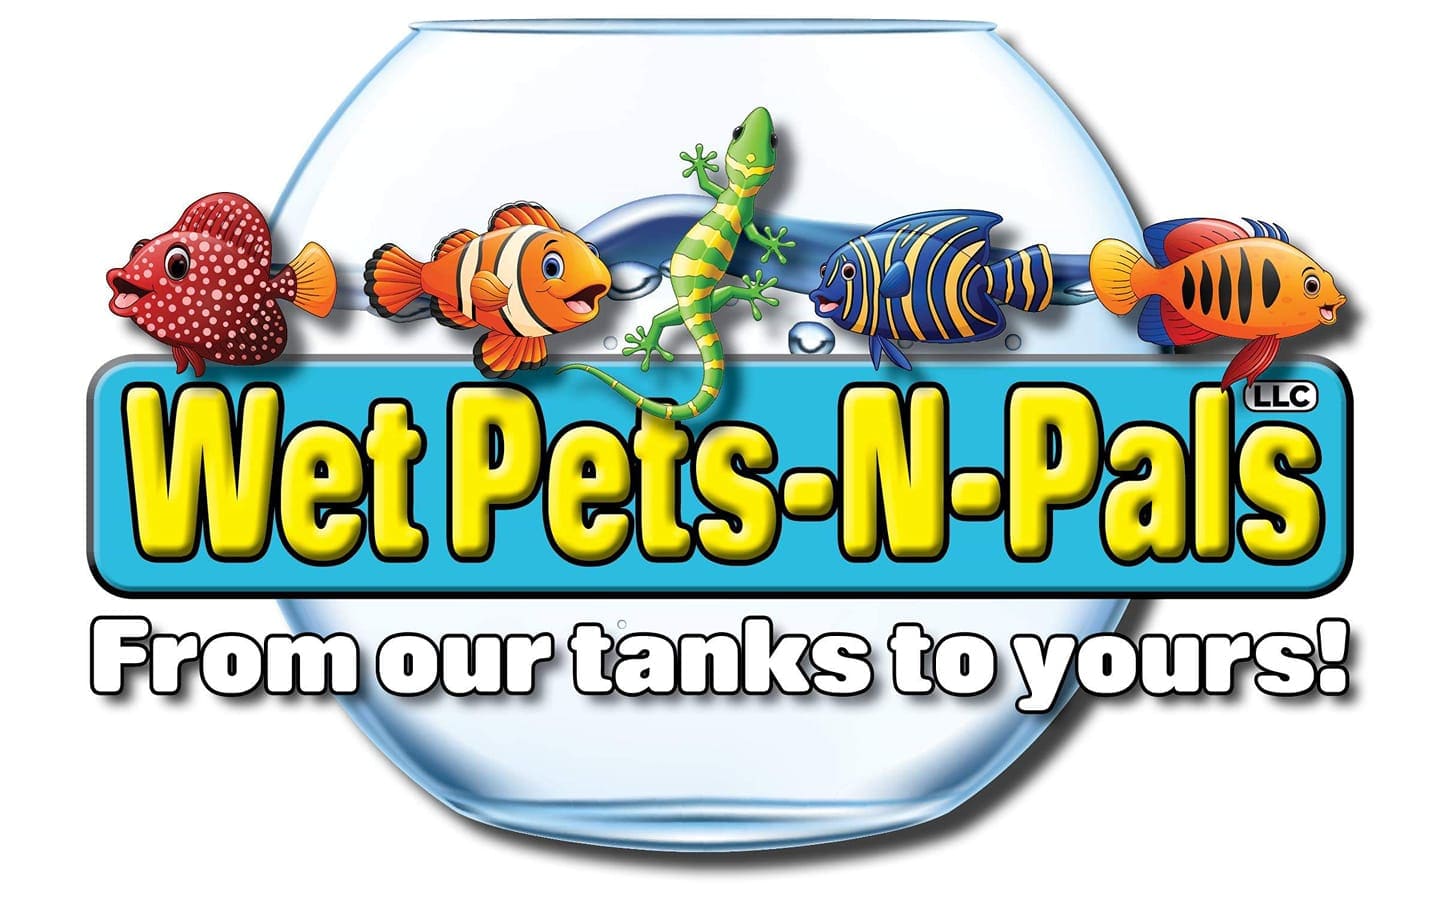 Wet Pets-N-Pals LLC